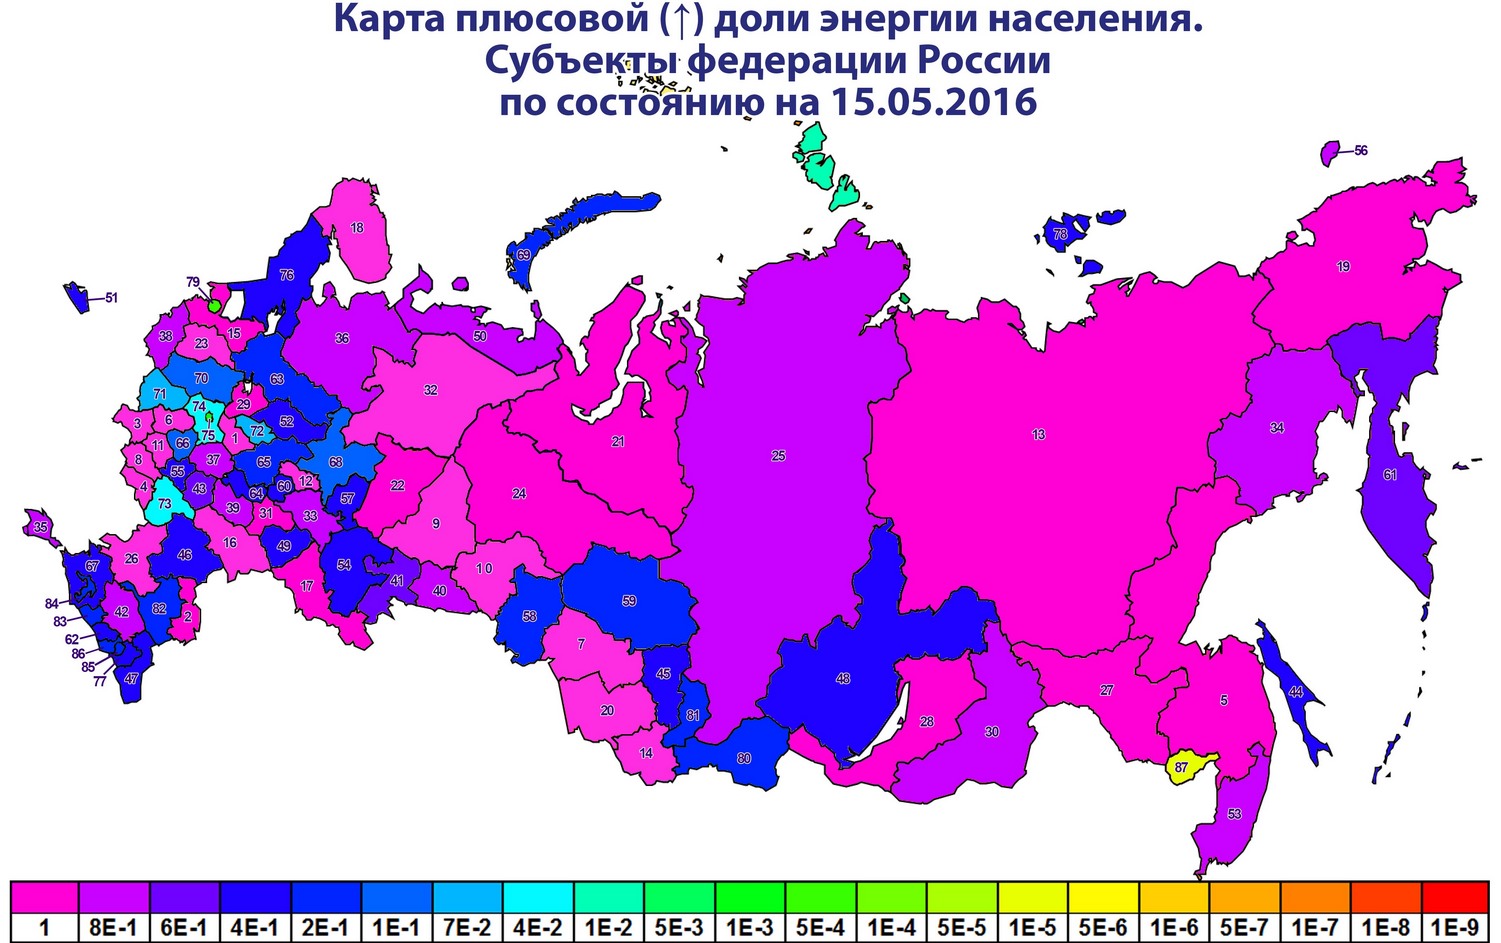 Россия население минусовое на 15.05.2016